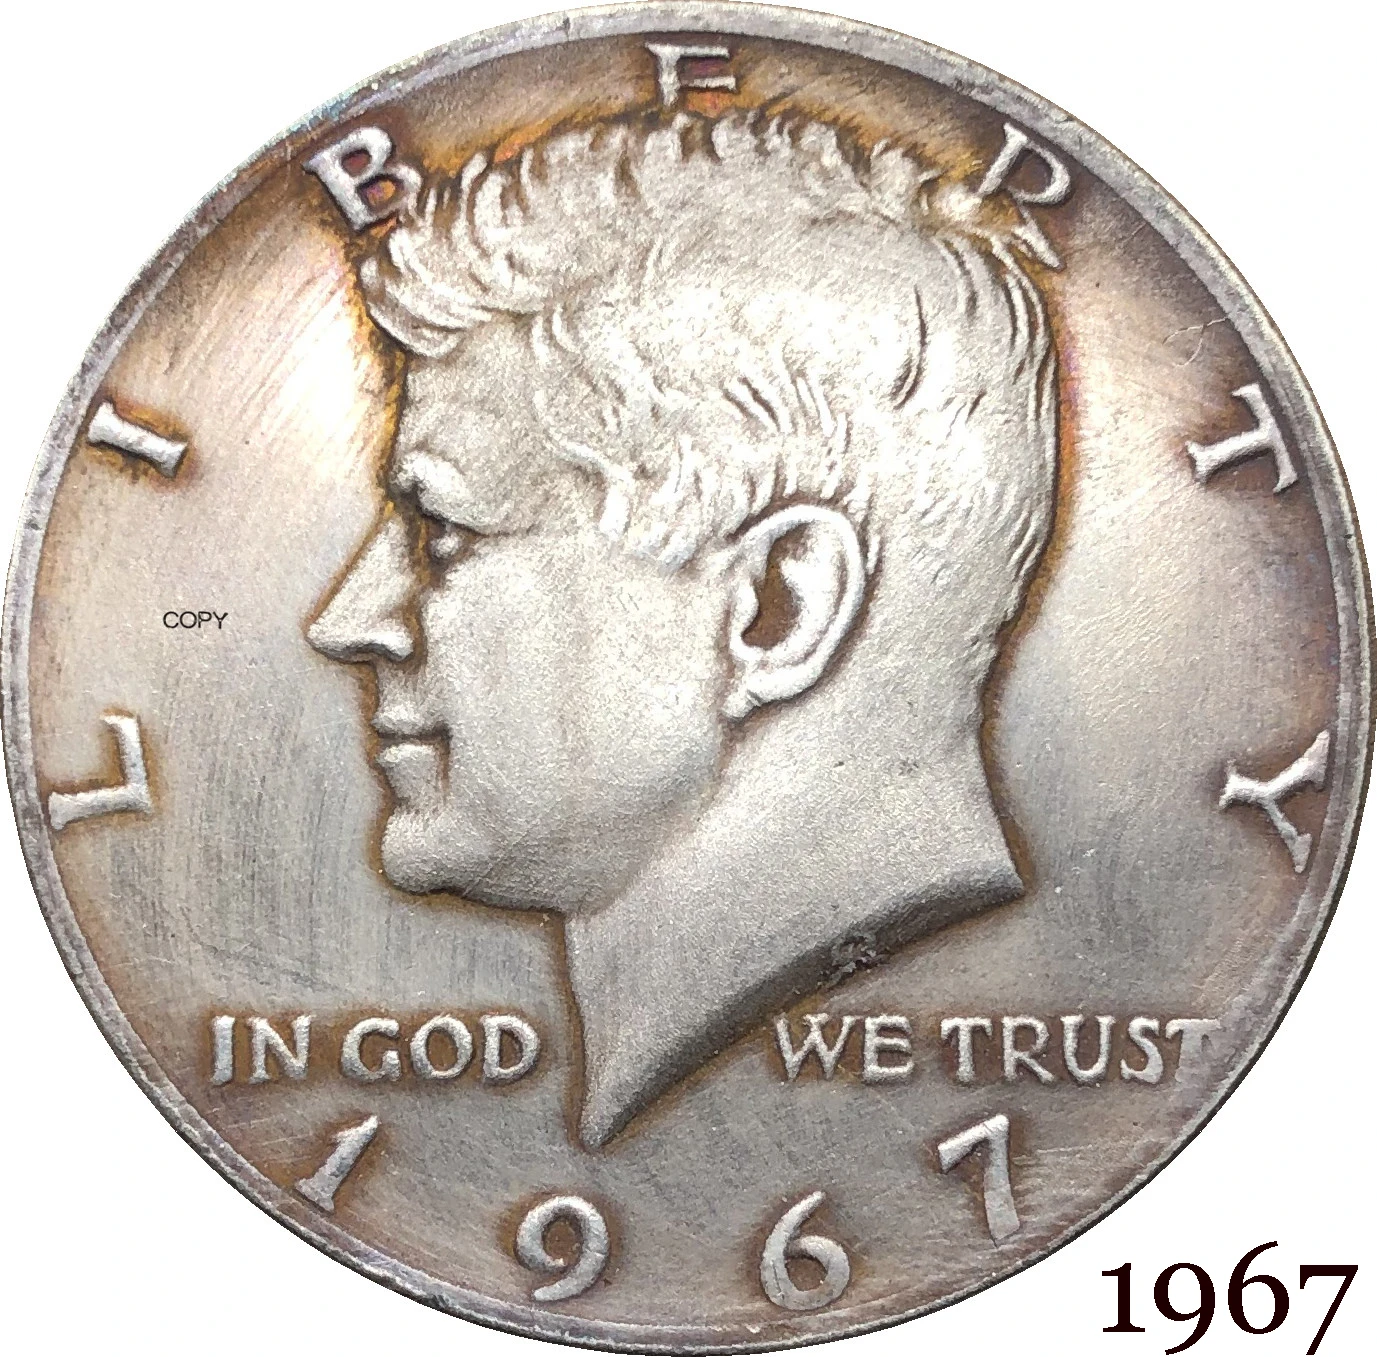 brecha Malawi paquete Moneda de copia chapada en plata de los Estados Unidos, Liberty 1967,  Kennedy, medio dólar en Dios, Trust E PLURIBUS, cuproníquel, 1/2|Monedas  sin curso legal| - AliExpress